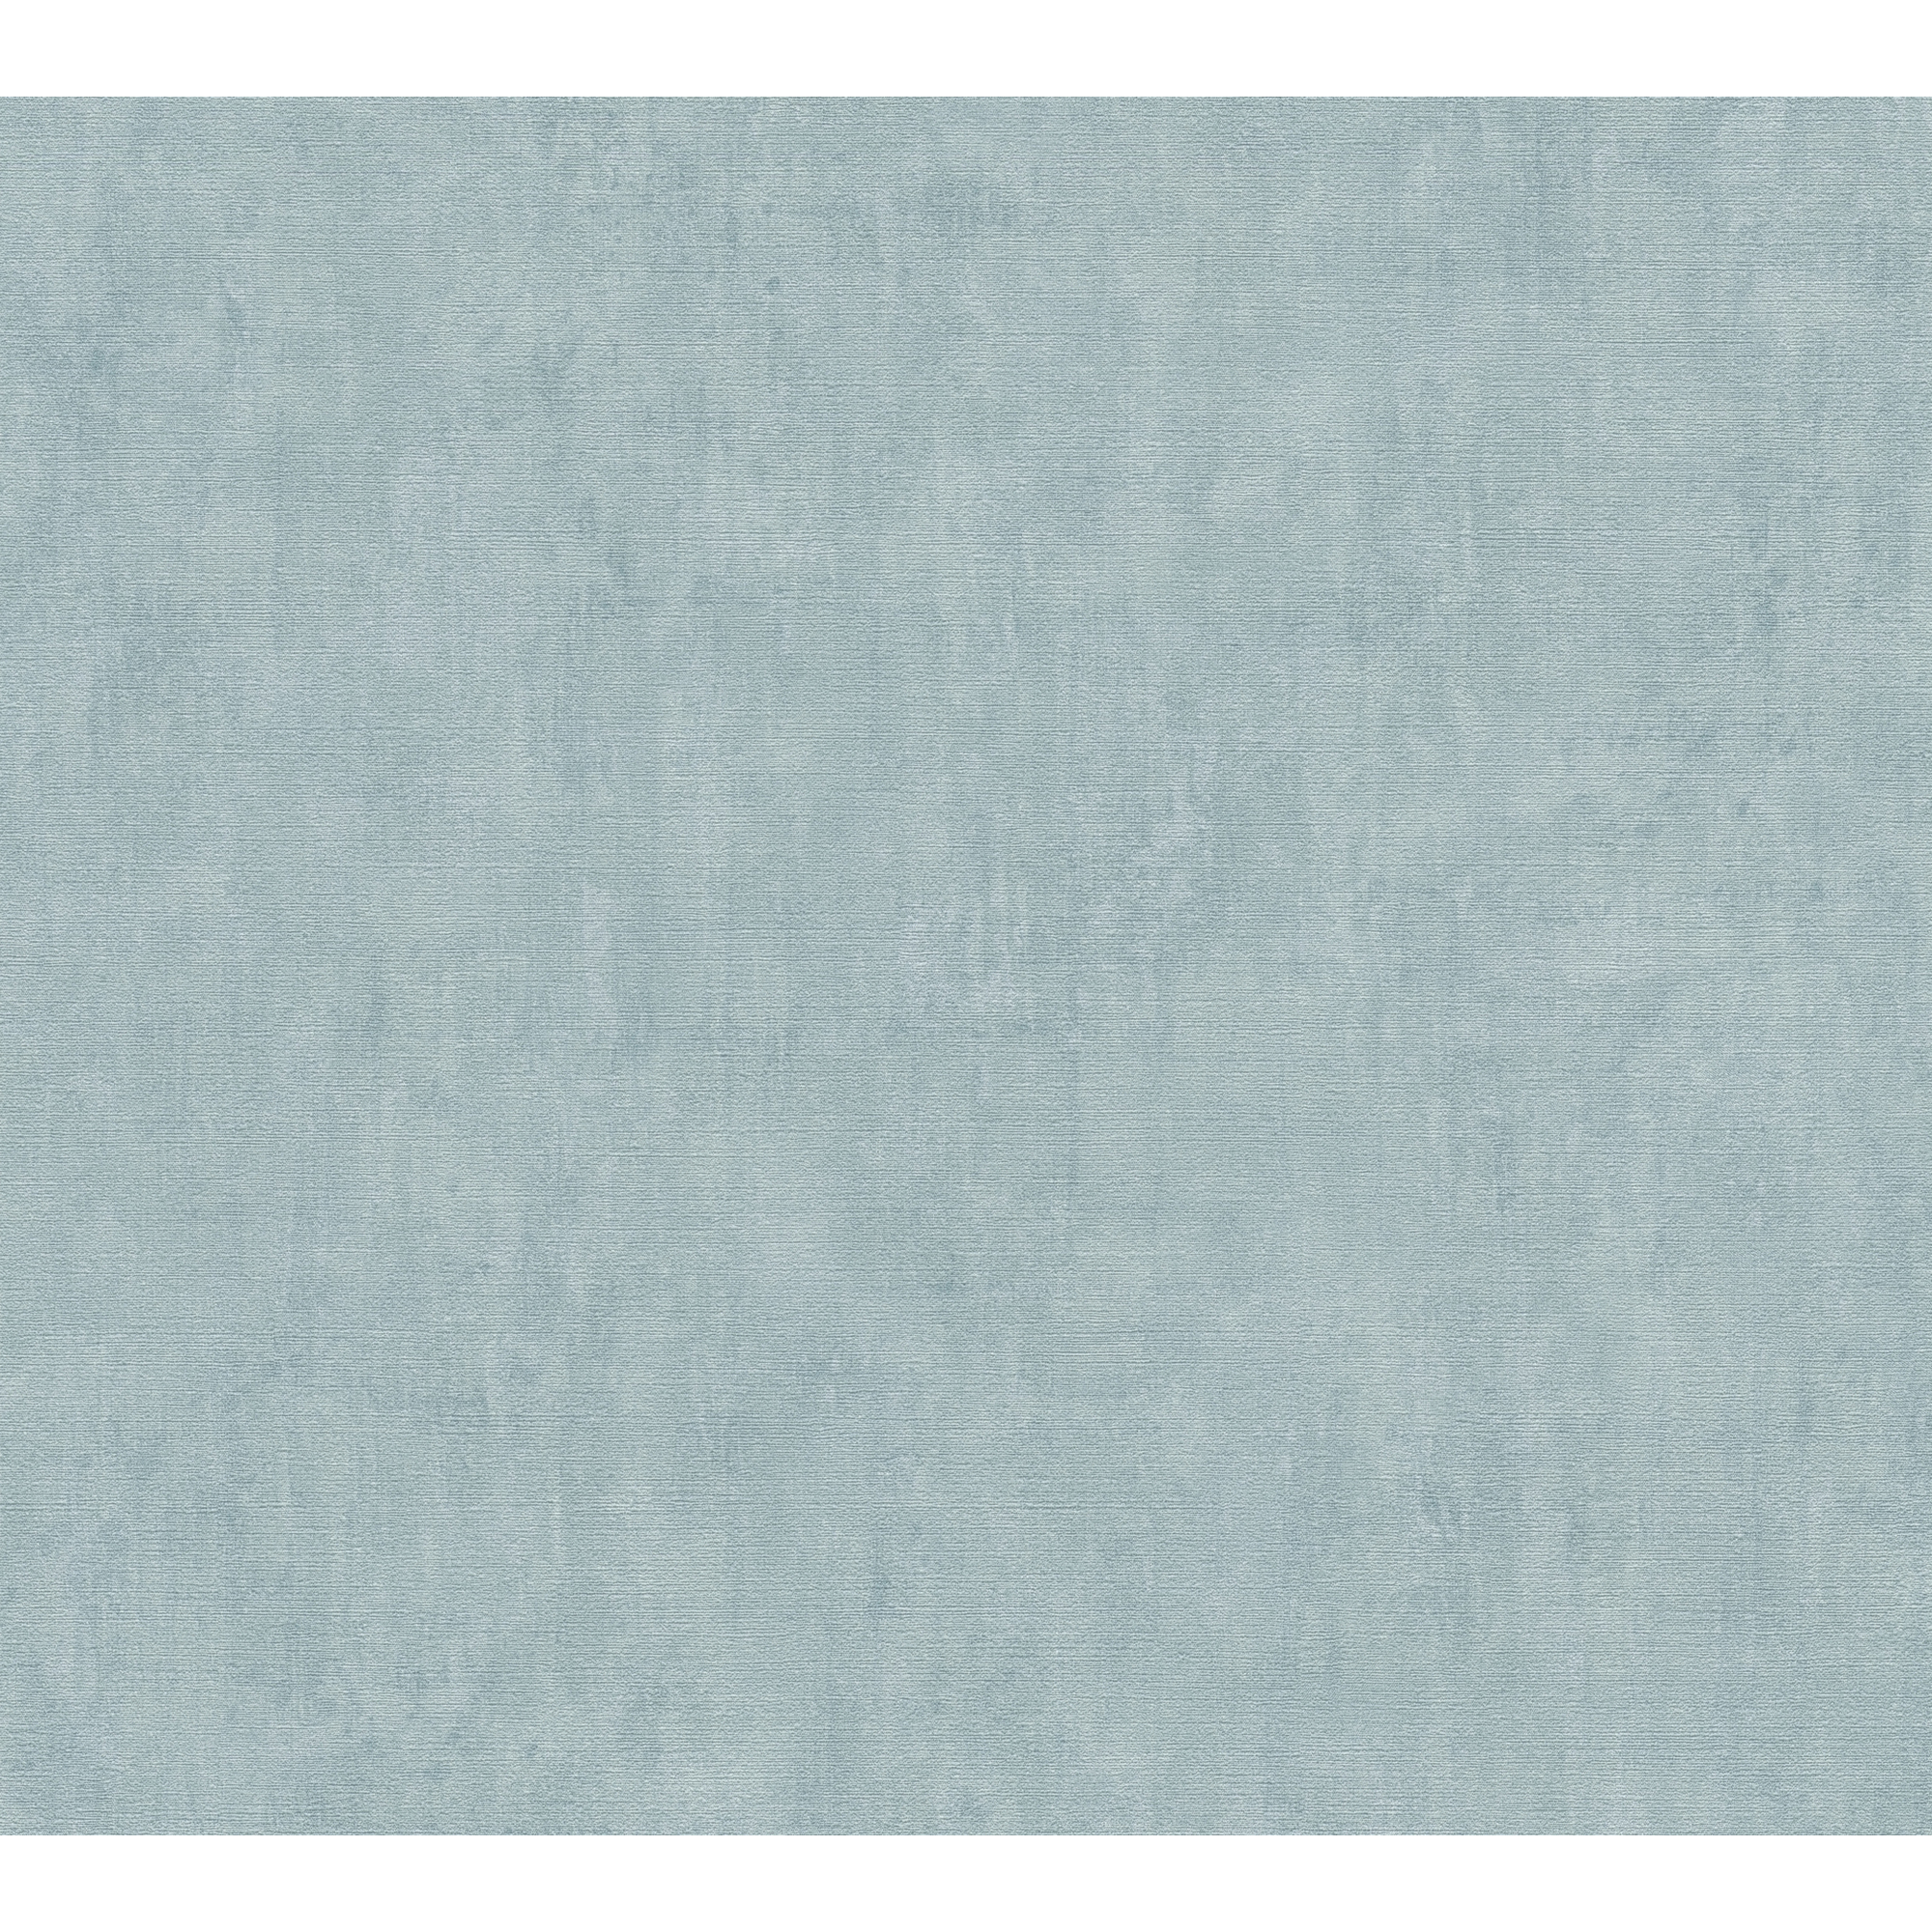 Vliestapete 'Cuba' Putzoptik blau 10,05 x 0,53 m + product picture